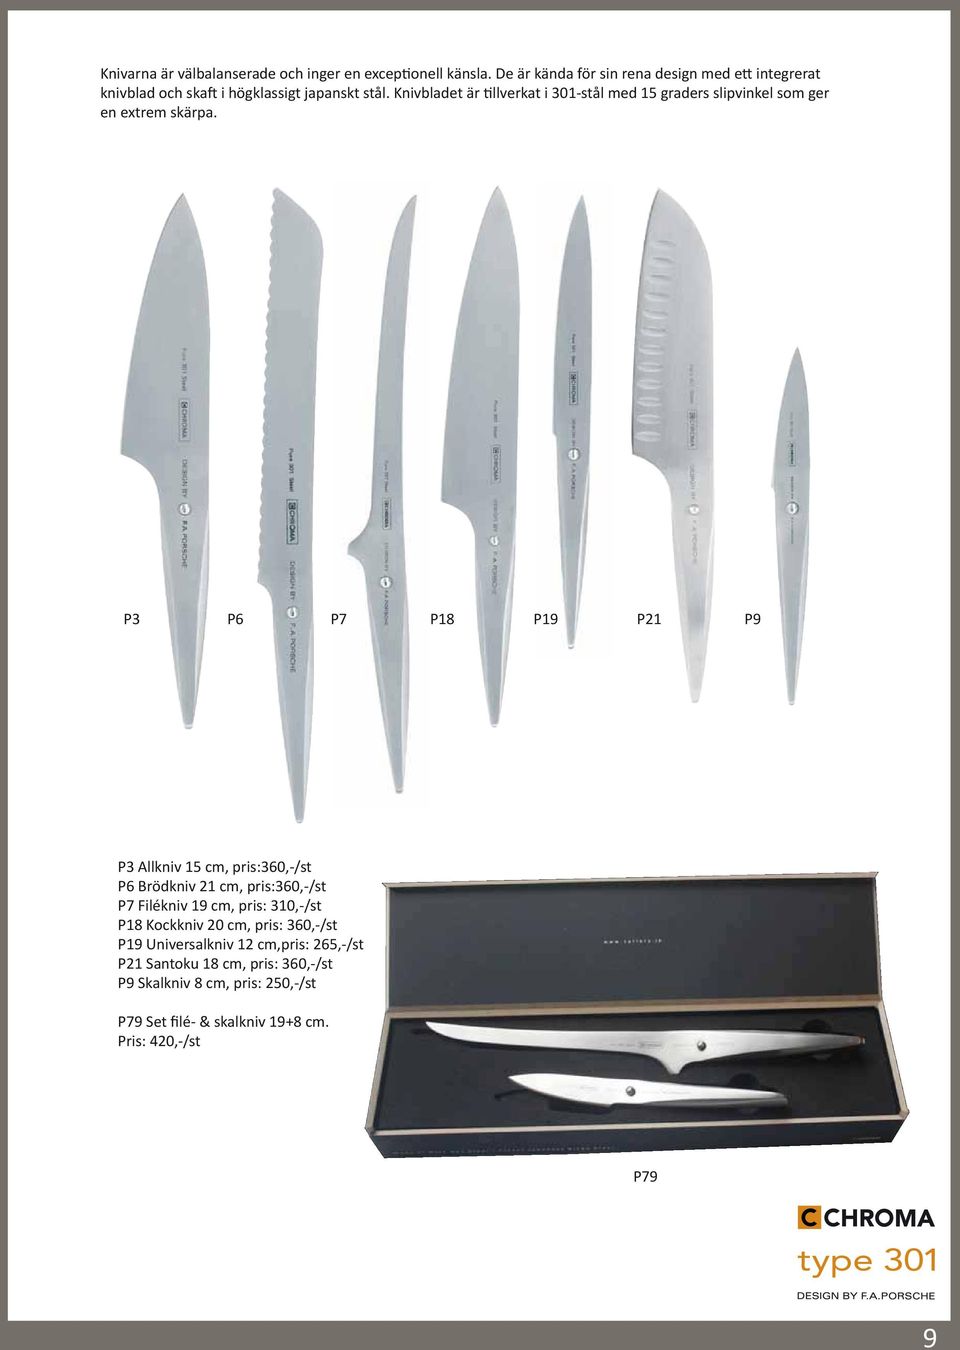 Knivbladet är tillverkat i 301-stål med 15 graders slipvinkel som ger en extrem skärpa.